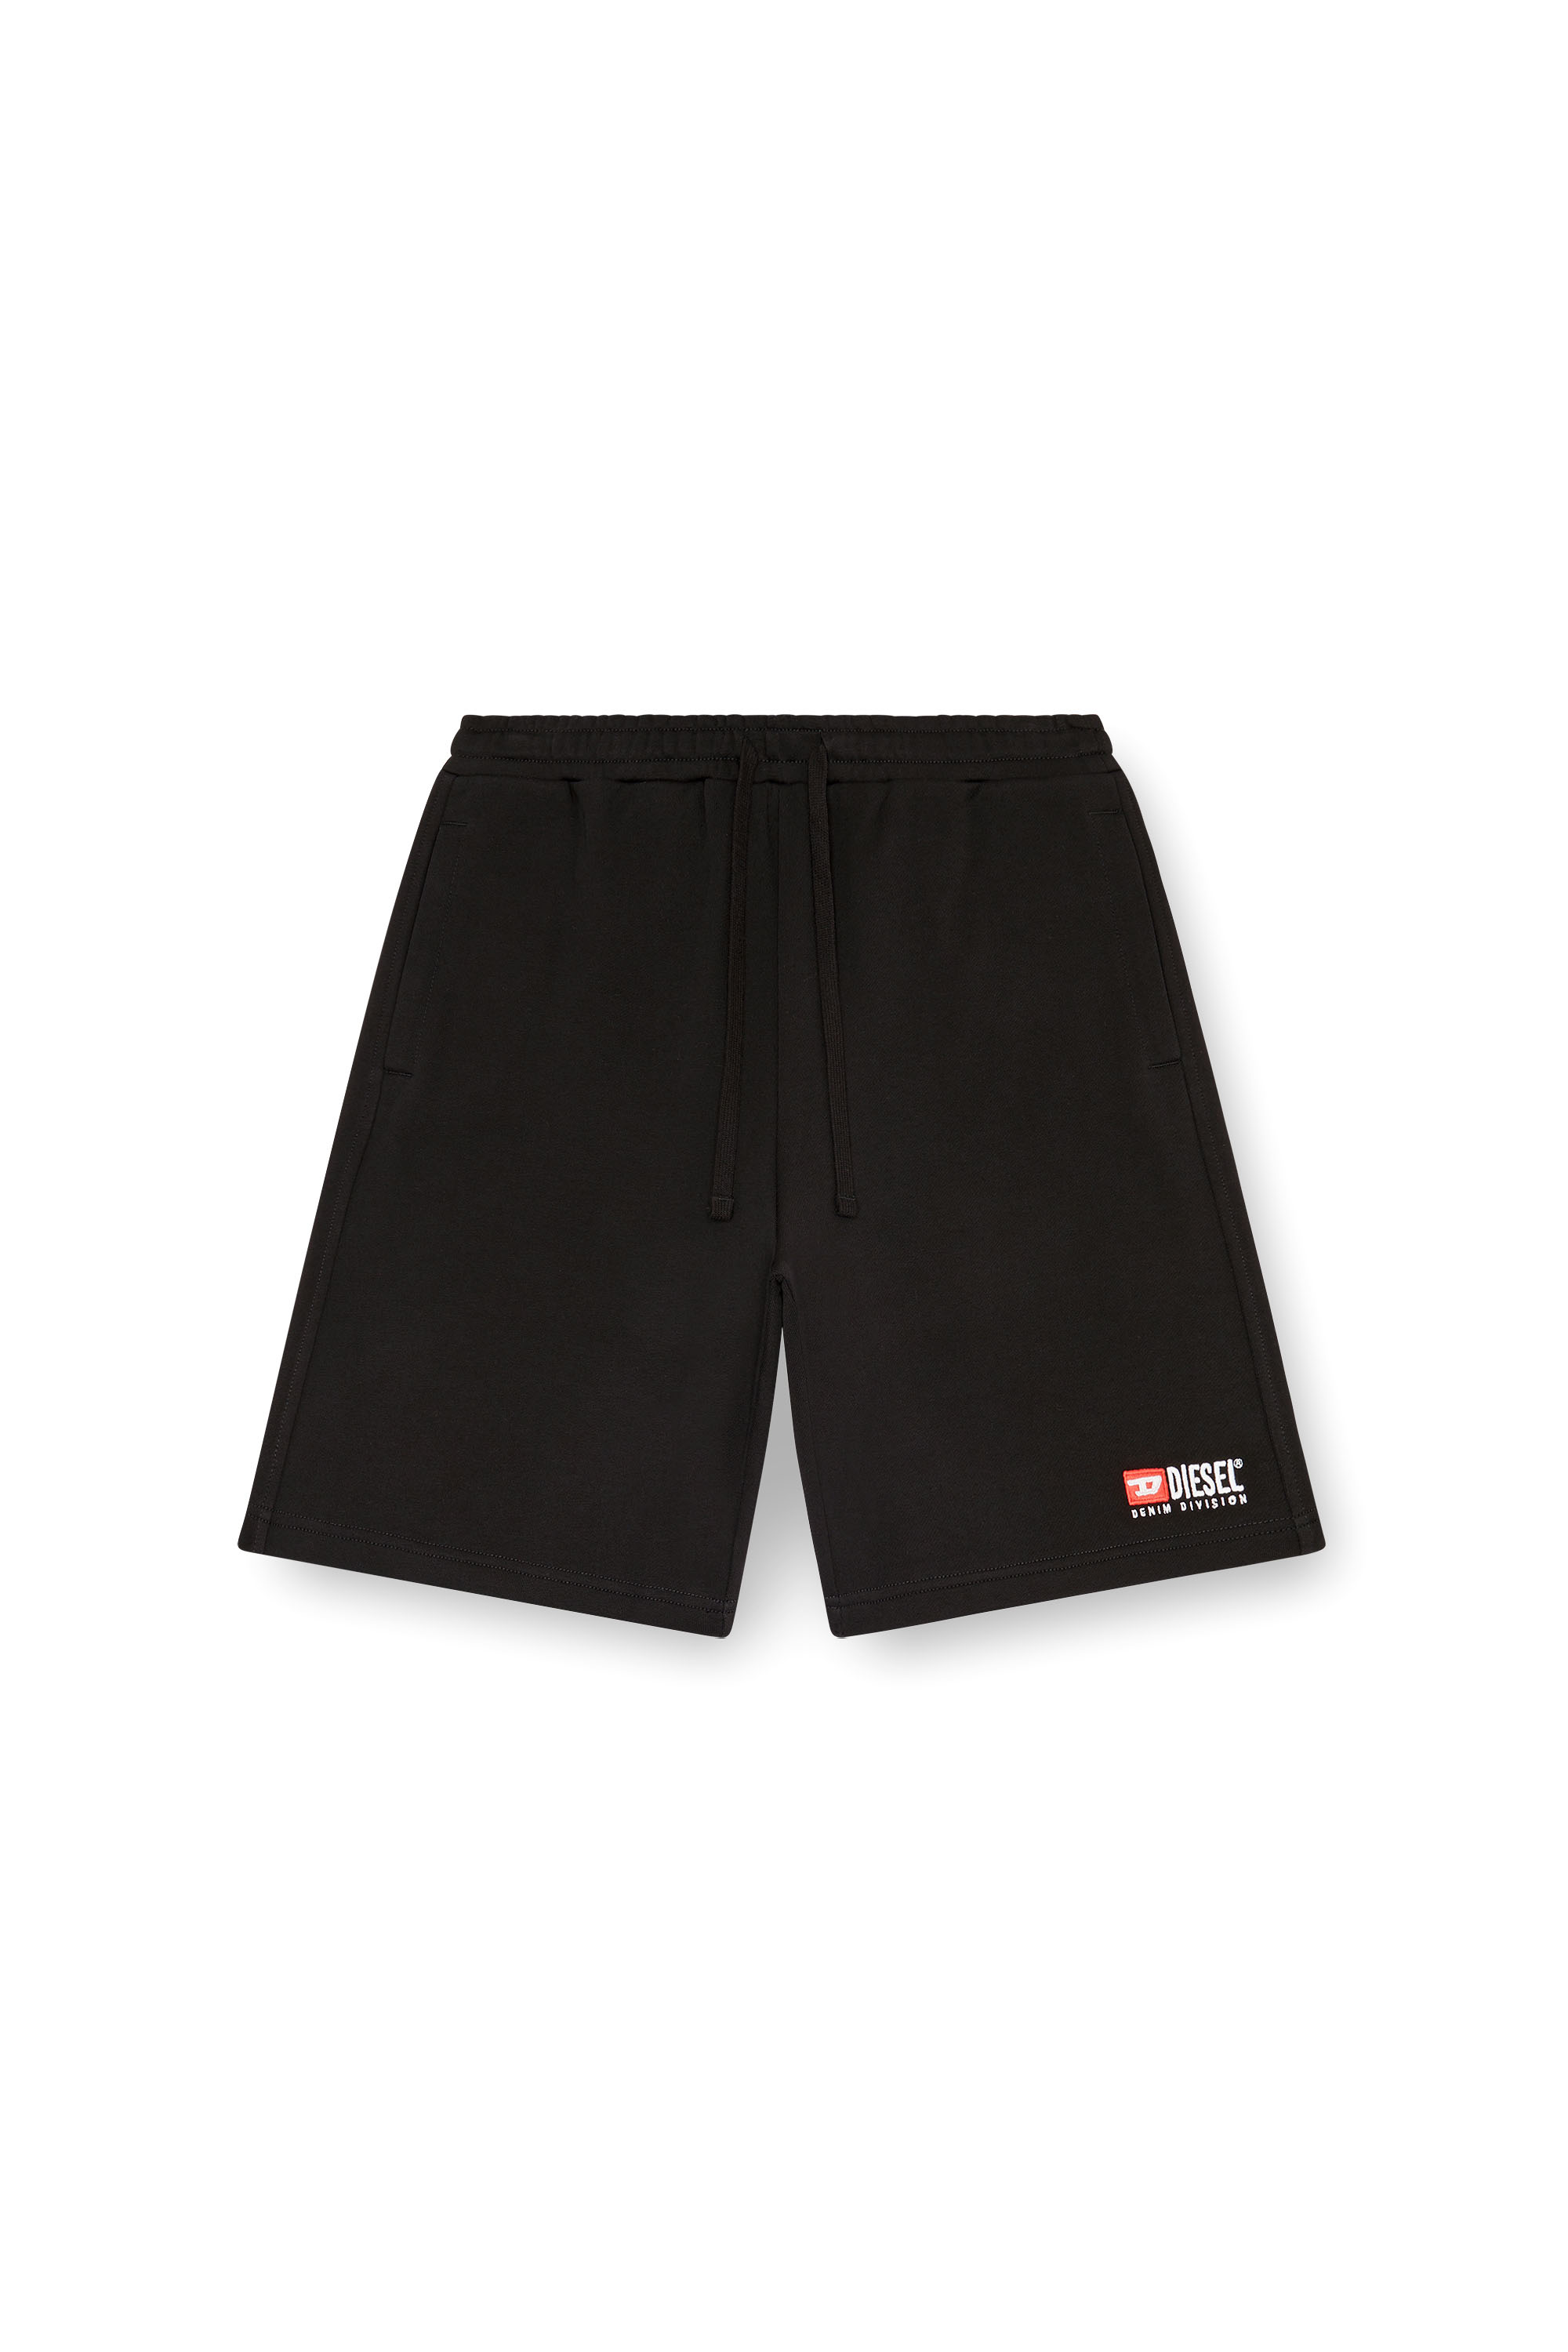 Diesel - P-CROWN-DIV, Hombre Pantalones cortos deportivos con logotipo bordado in Negro - Image 3